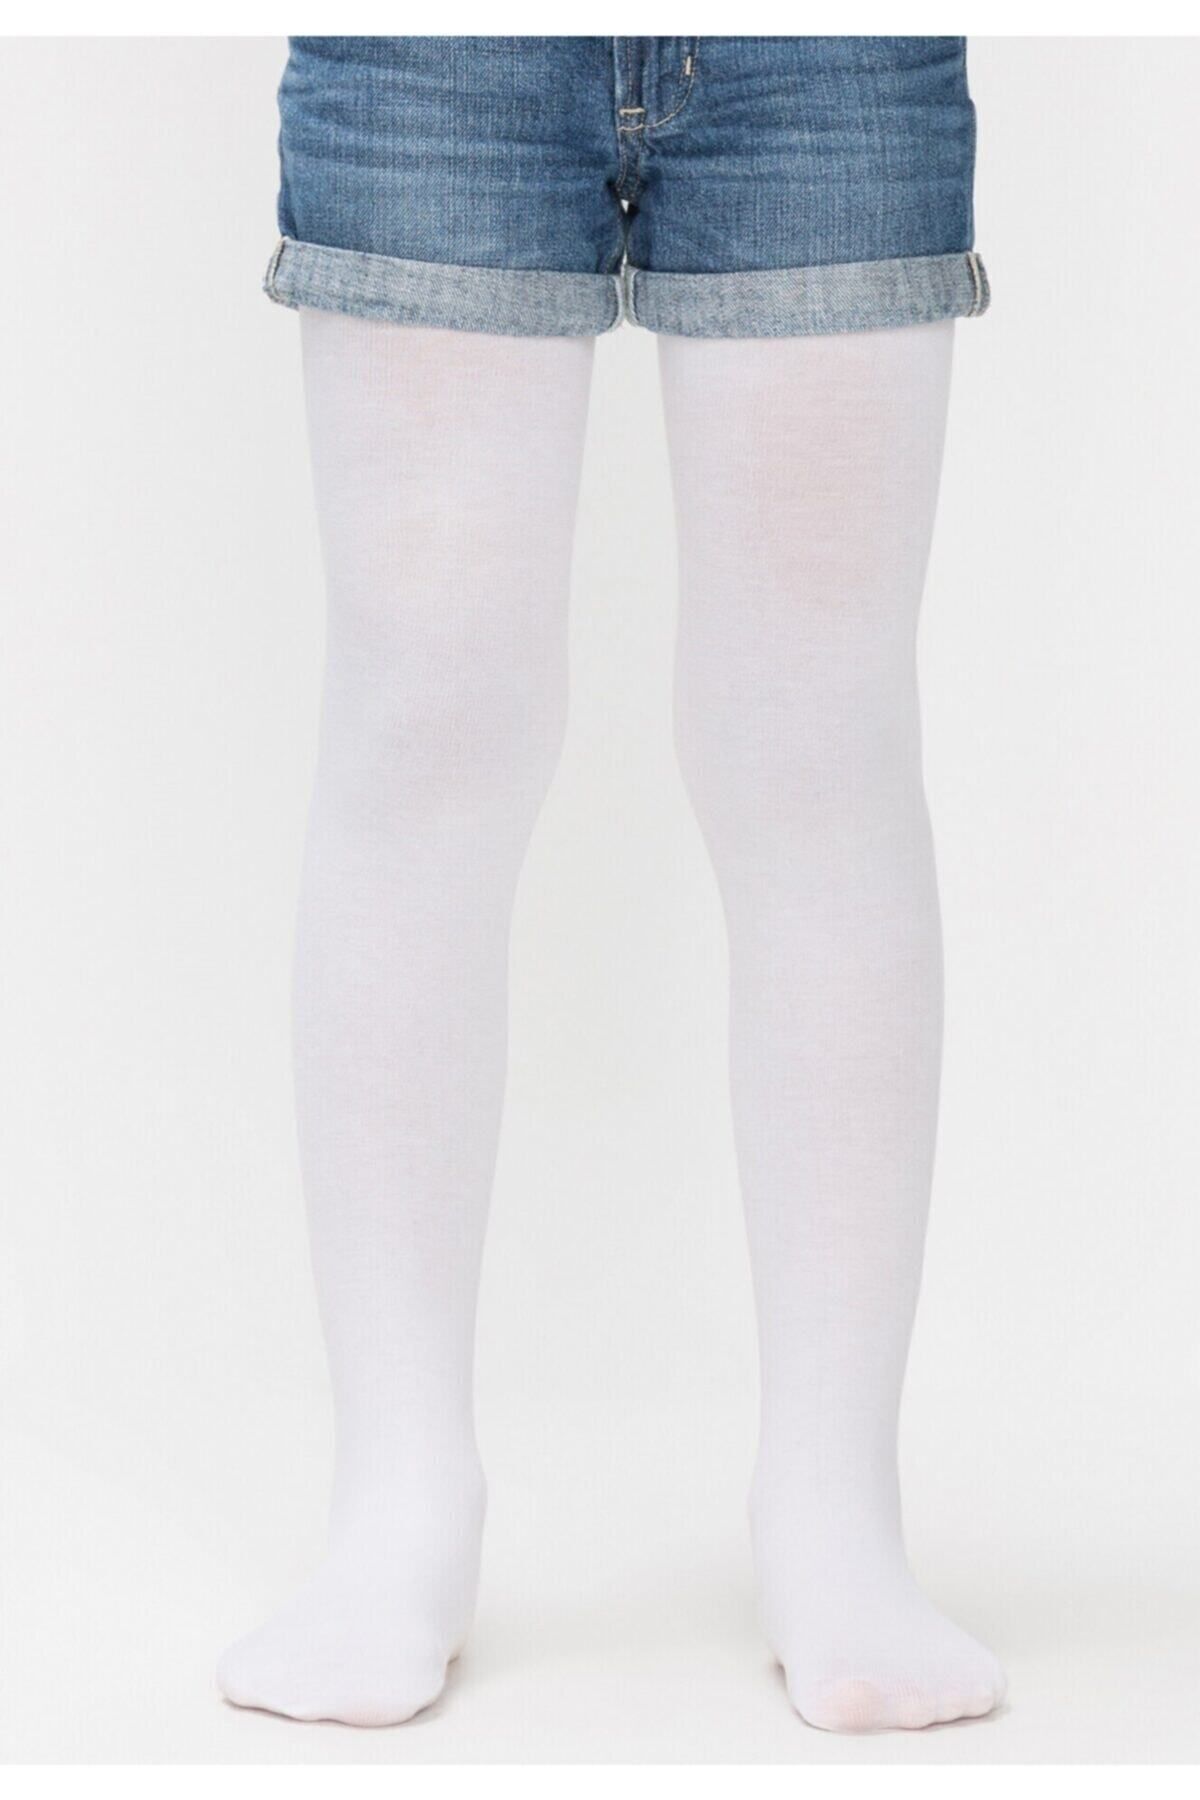 DORE Kız Çocuk Beyaz Kalın Pamuk Külotlu Çorap